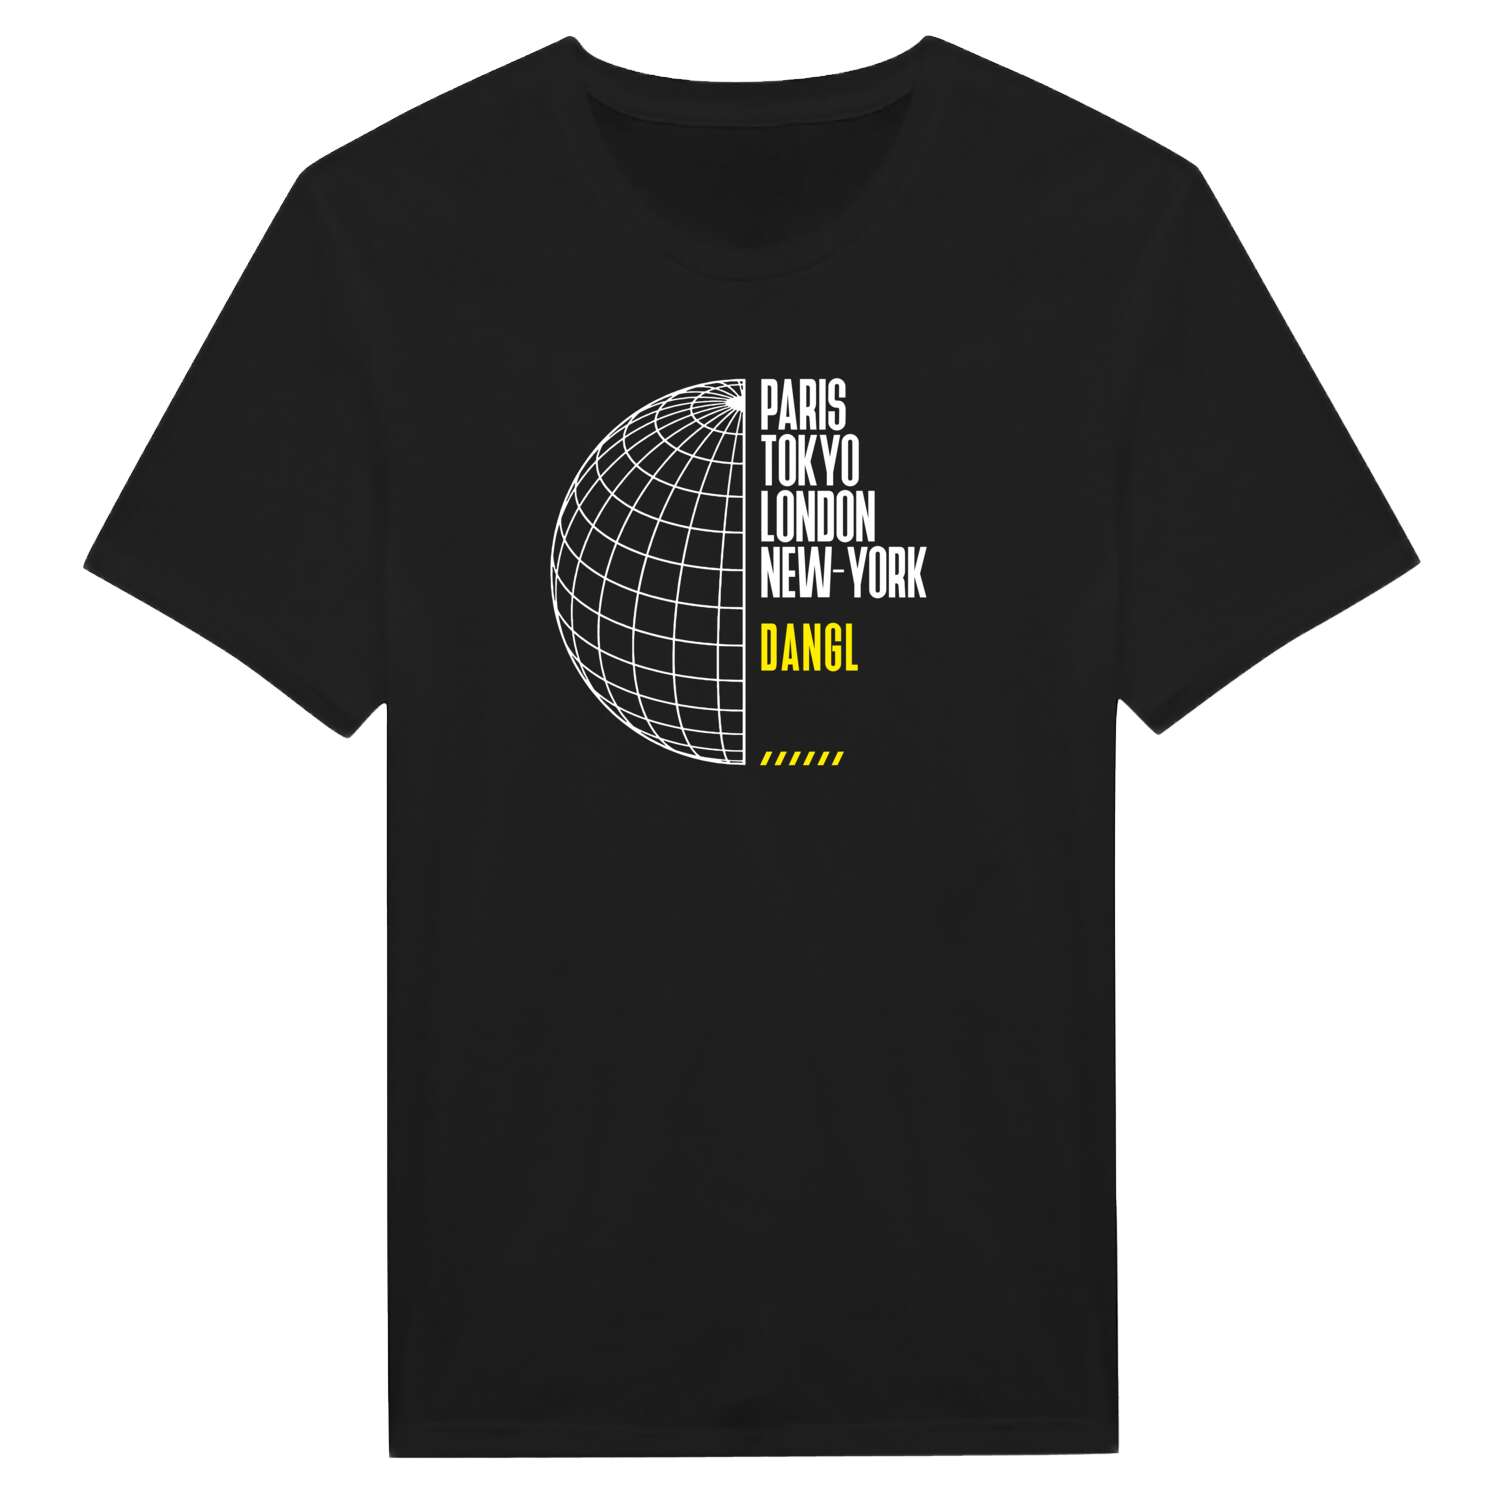 Dangl T-Shirt »Paris Tokyo London«